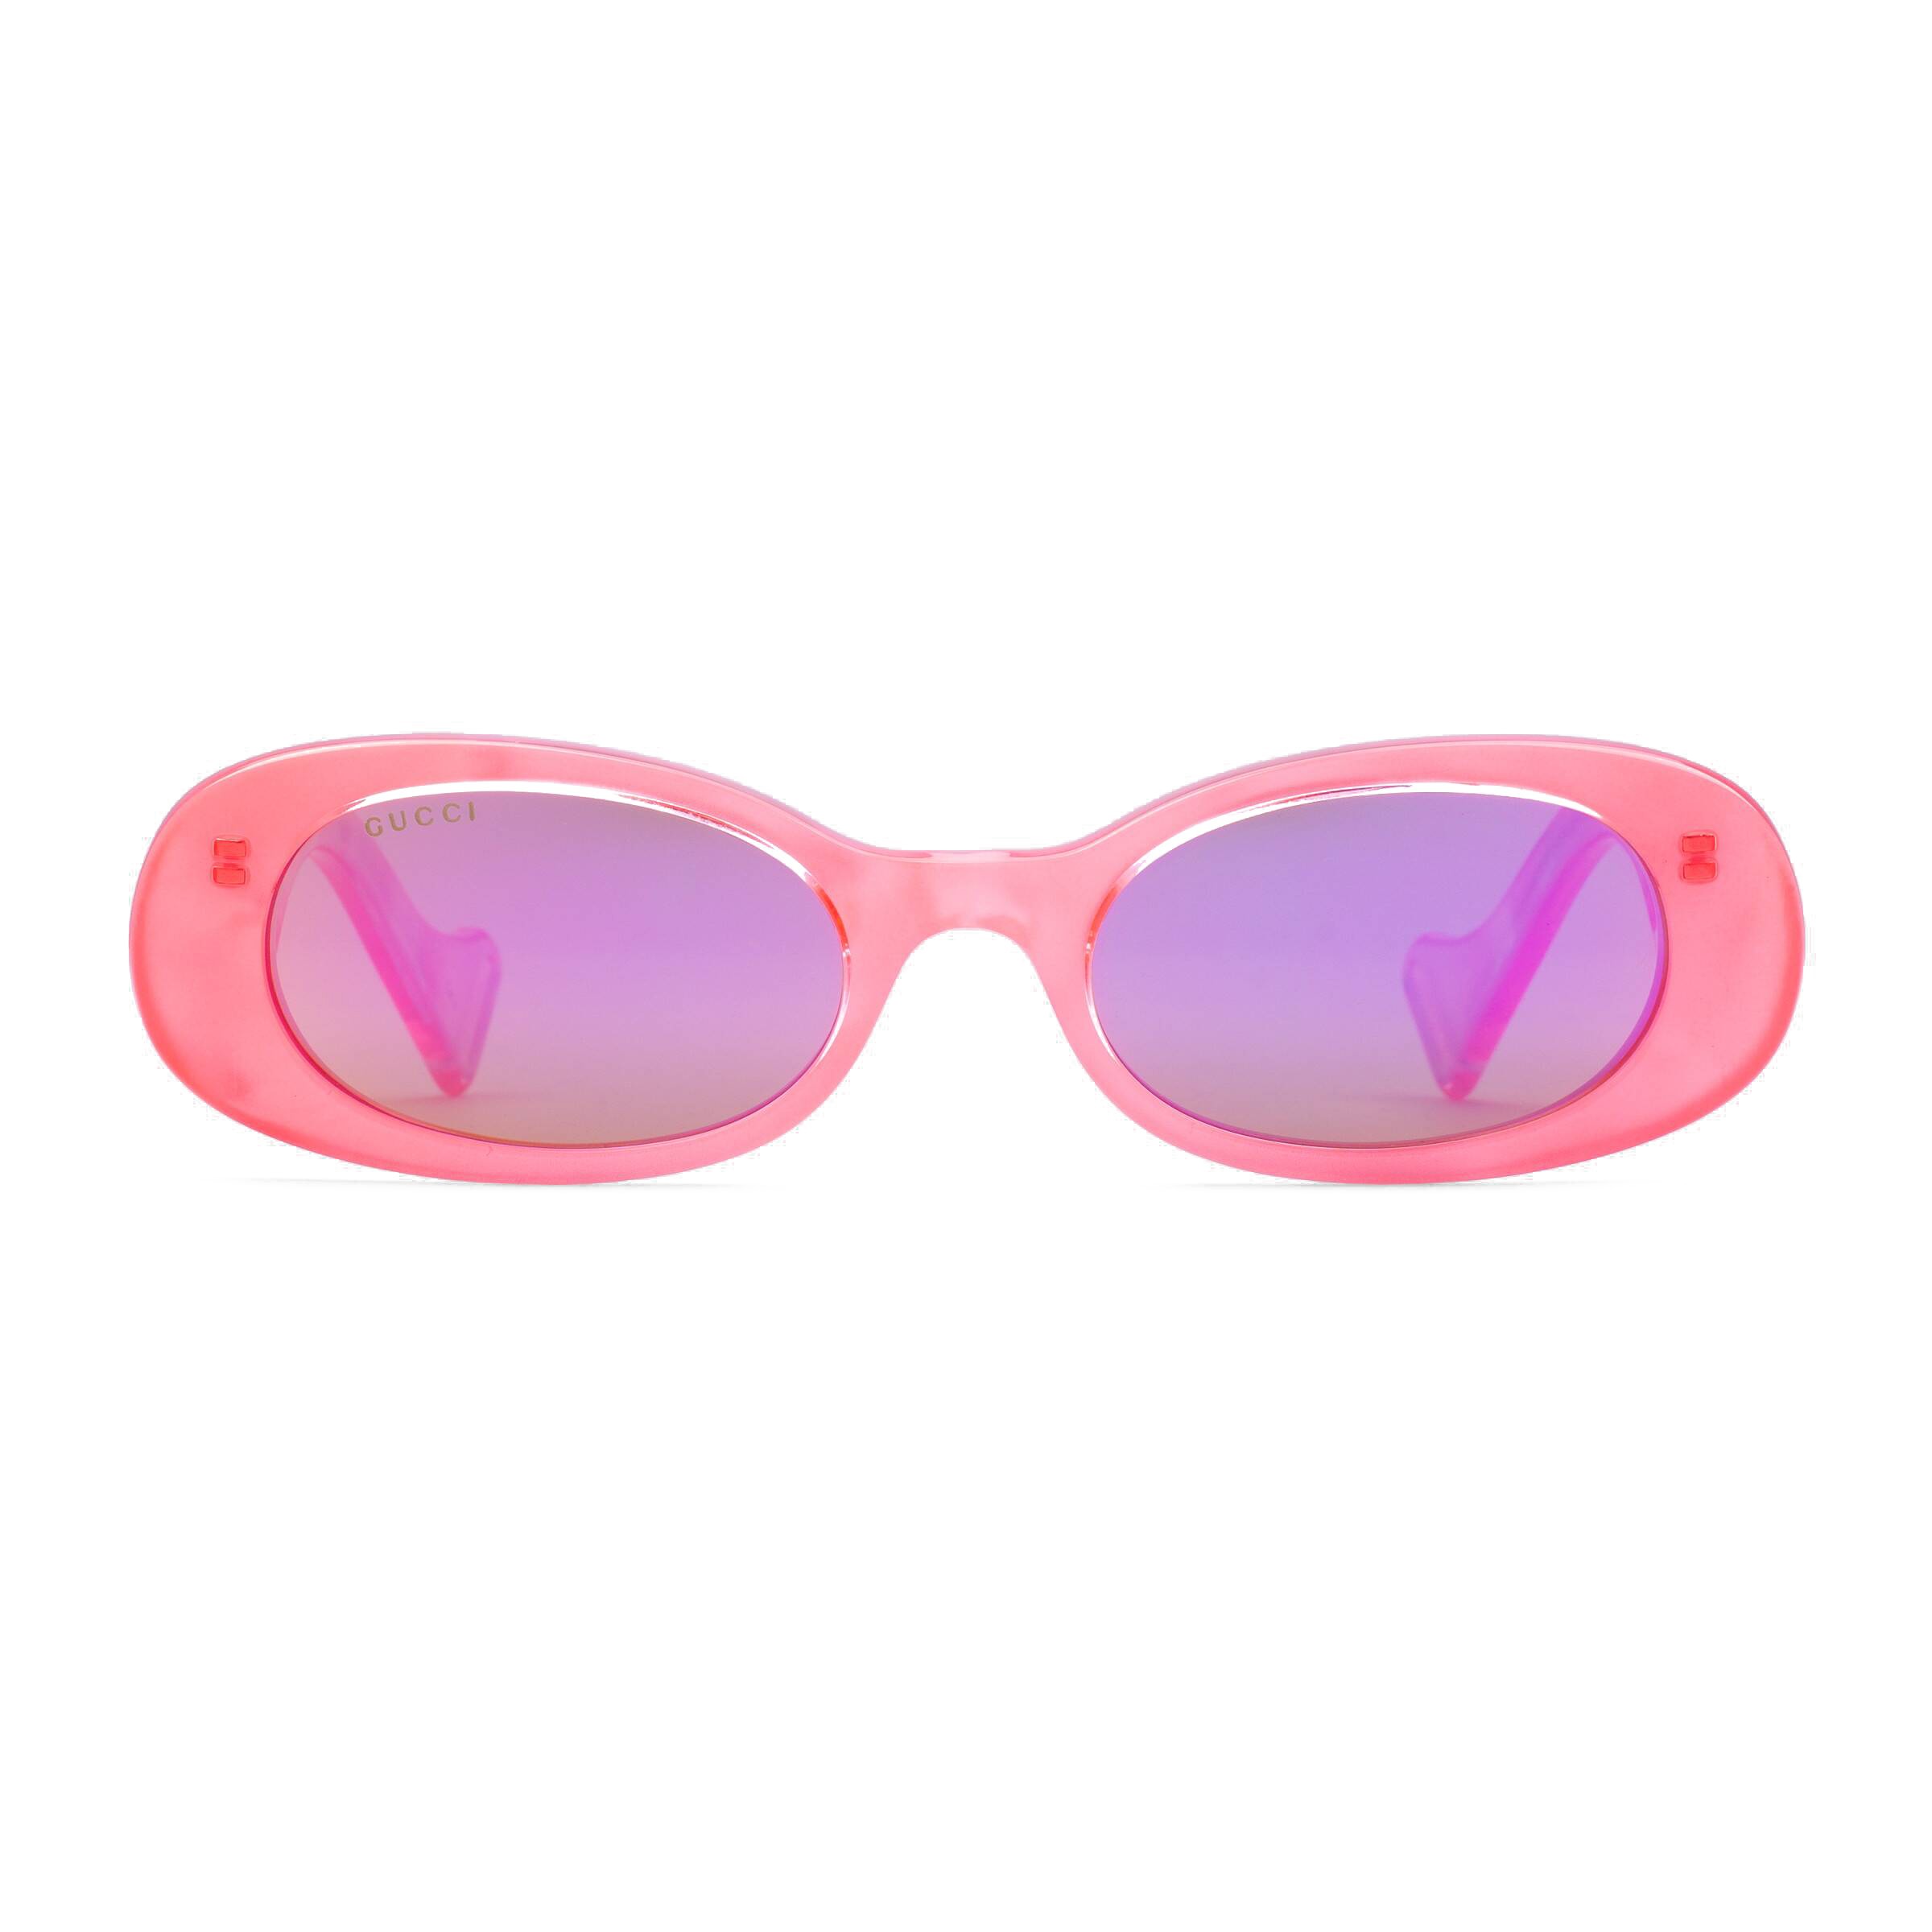 Gucci - Oval Sunglasses - Pink - Gucci 